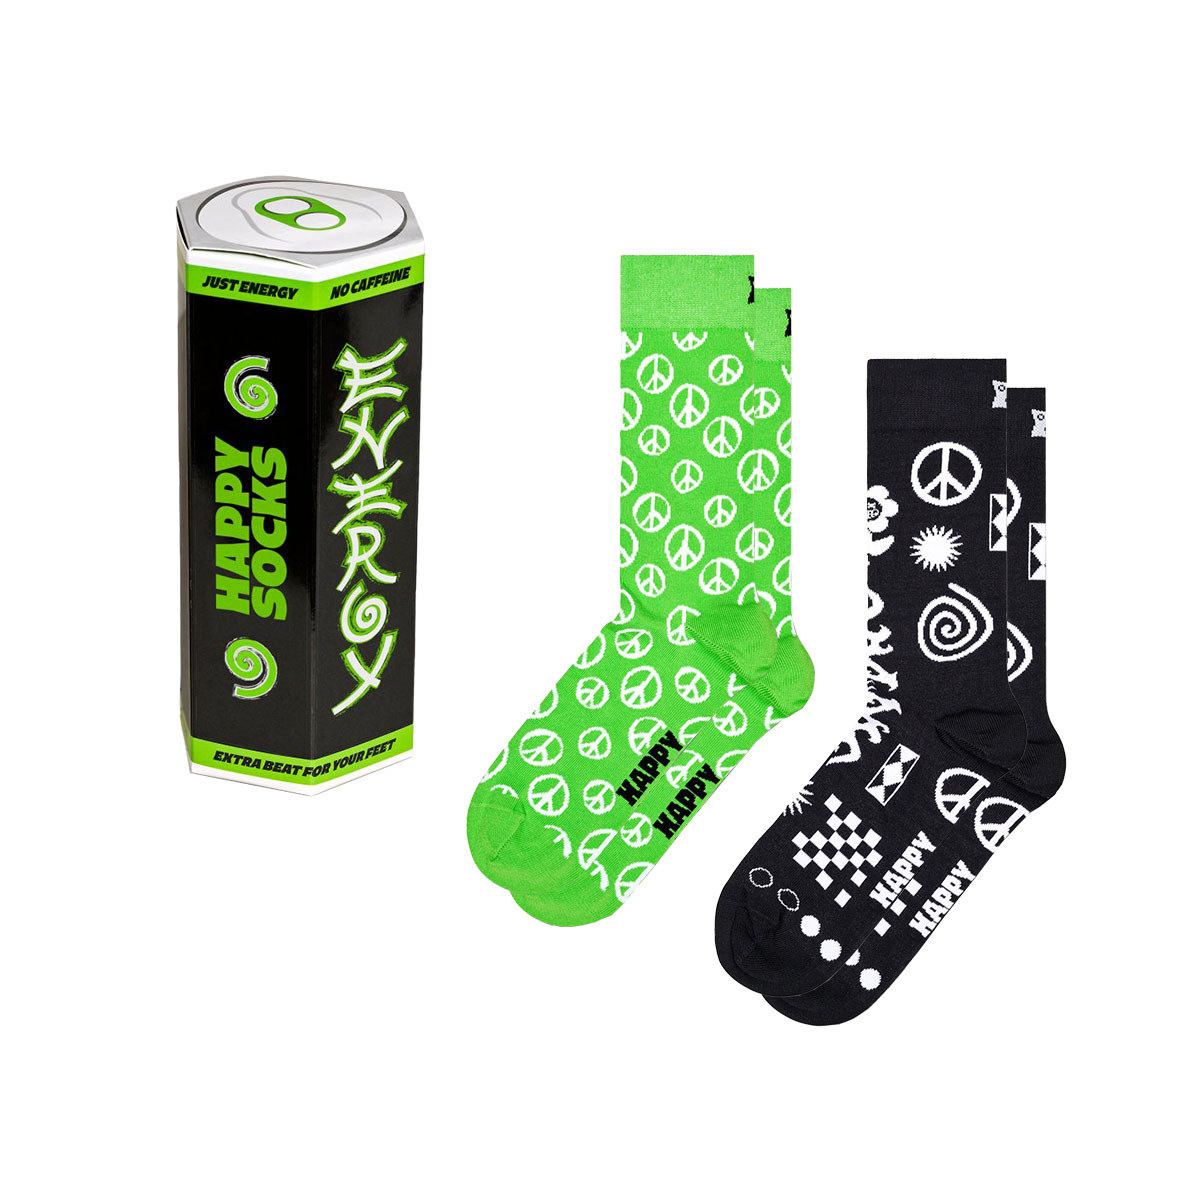 【2足セット】【24SS】Happy Socks ハッピーソックス Energy Drink  3Pack Gift Set GIFT BOX クルー丈 ソックス ユニセックス メンズ ＆ レディース 10243002